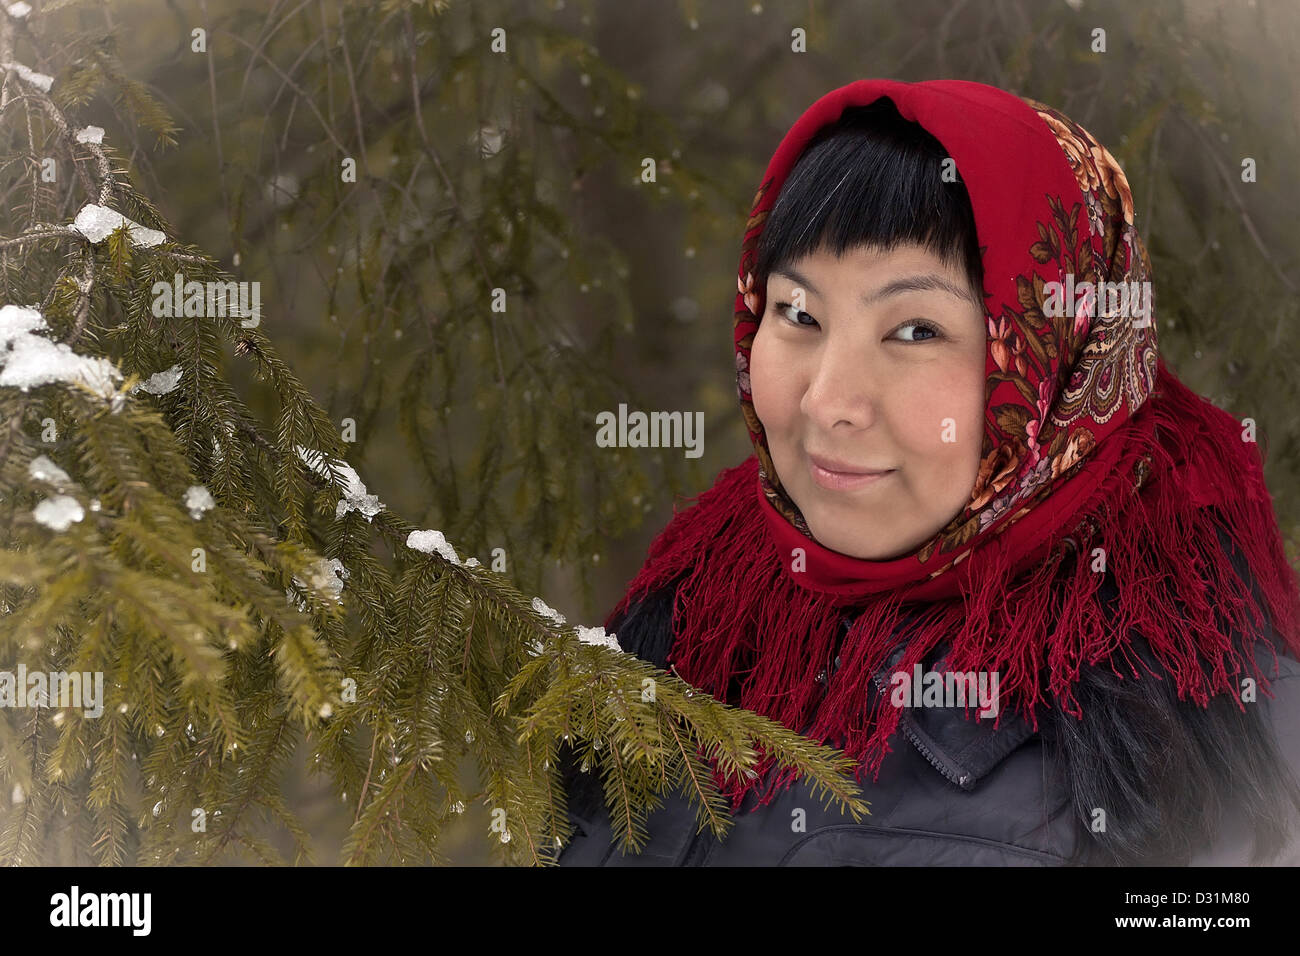 Asiatin, die traditionelle russische Kopftuch. Winter Hintergrund. Wirkung  von ein altes Foto Stockfotografie - Alamy